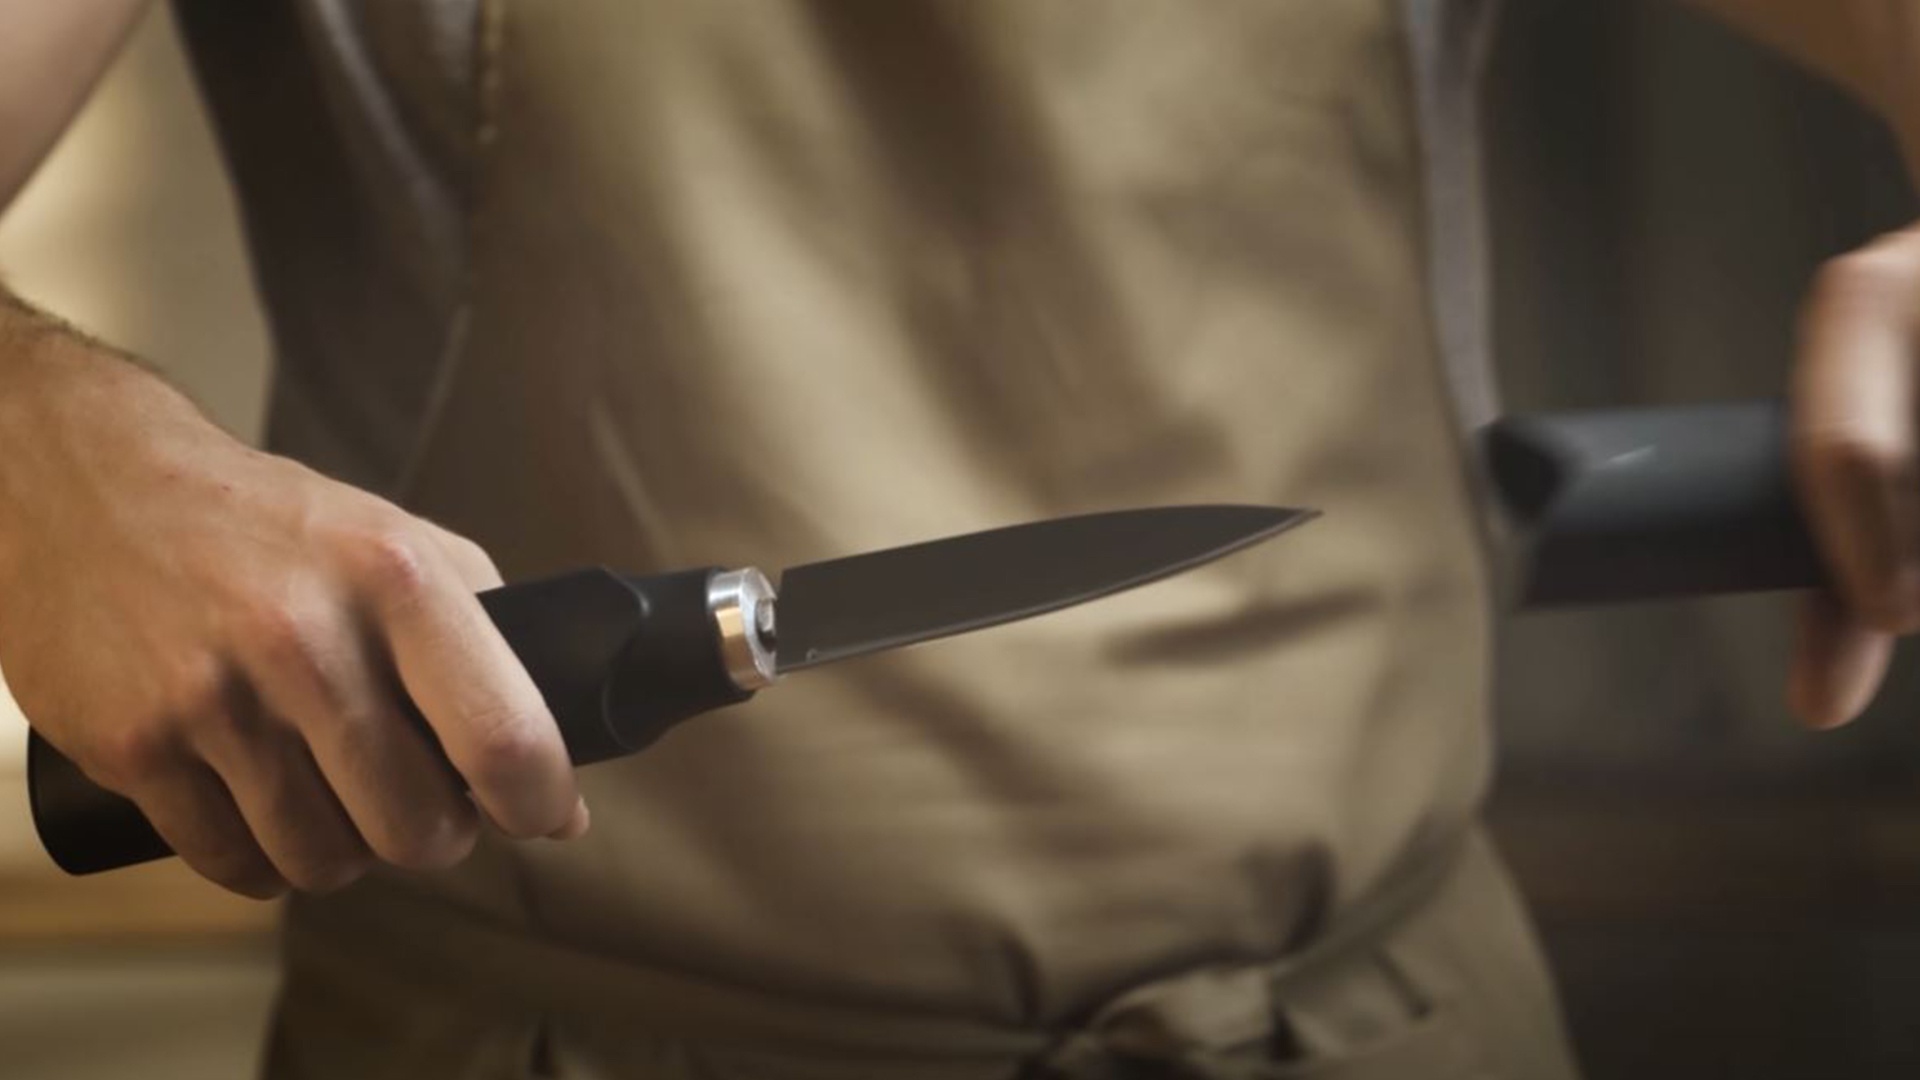 #»Das schärfste Messer der Welt« verwendet Ultraschall und wird gerade auf Kickstarter finanziert